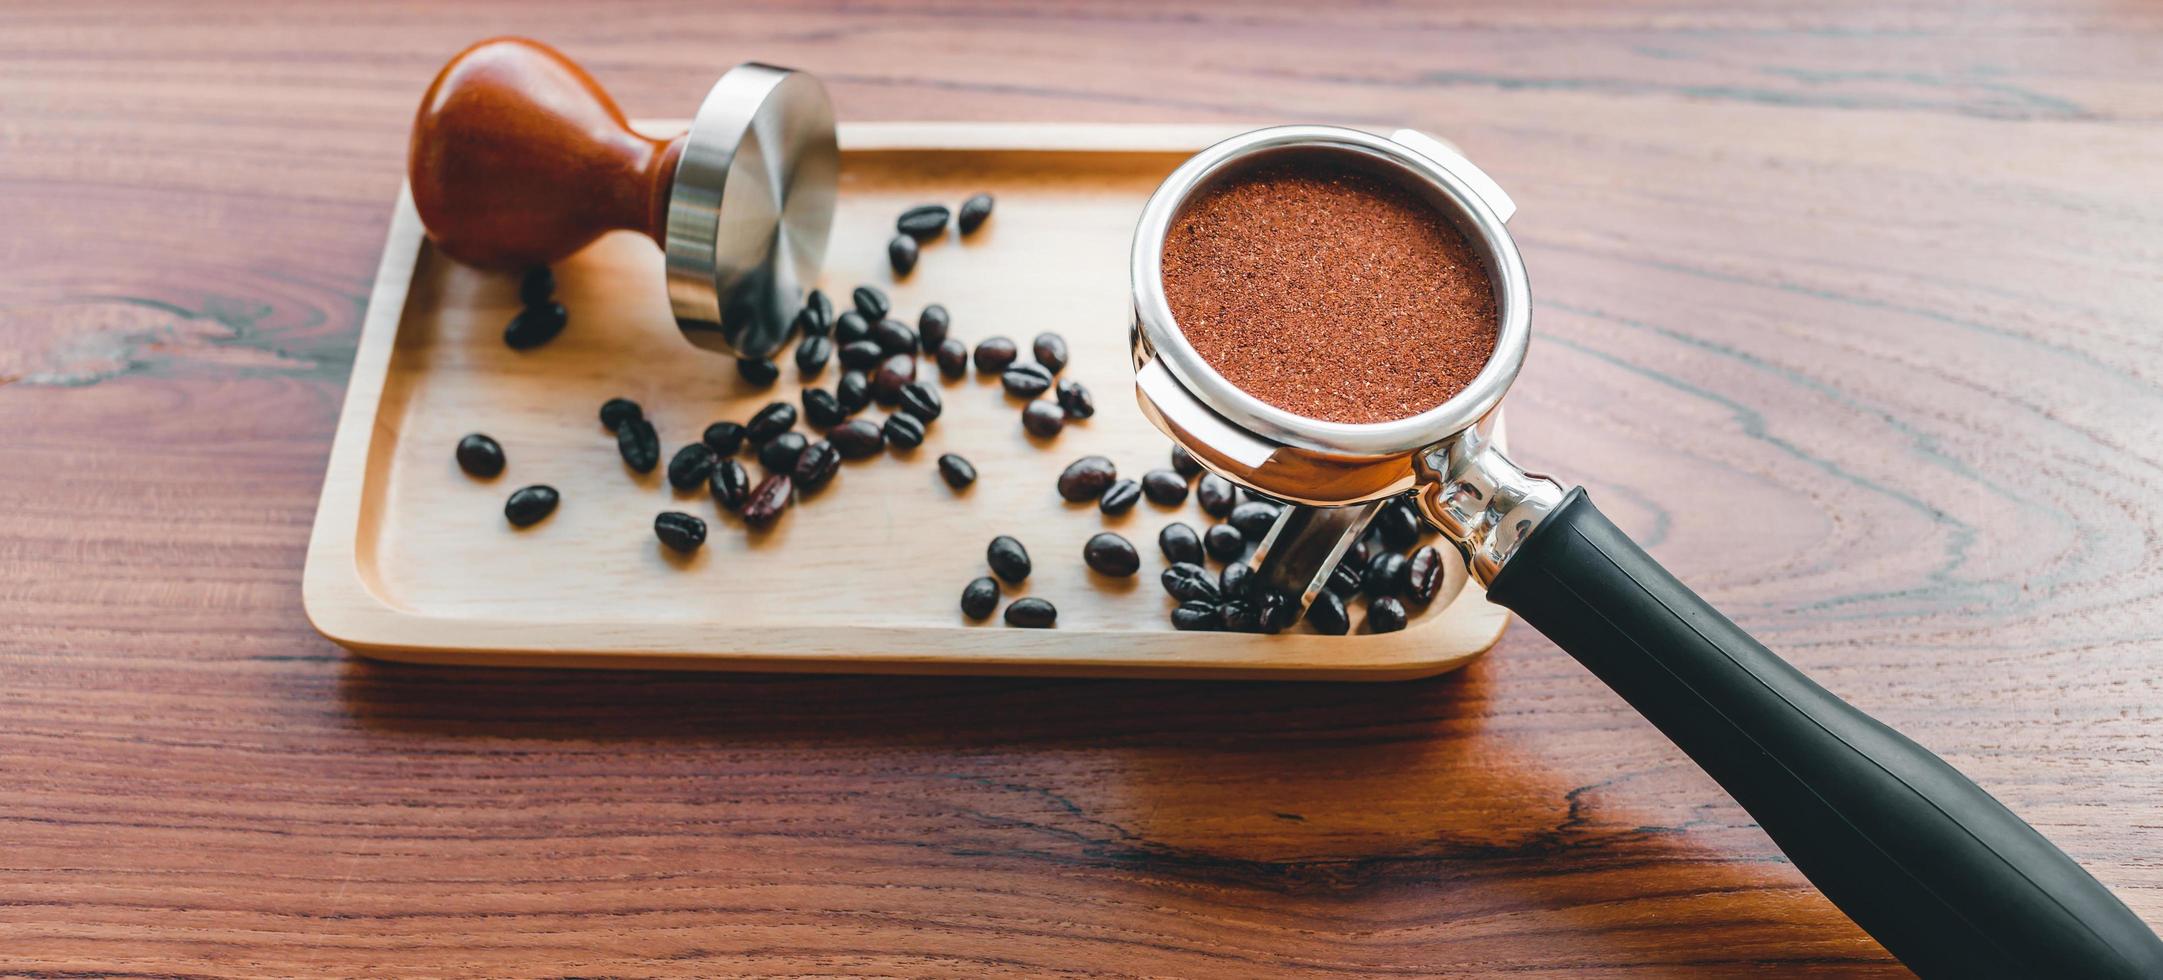 equipamento de adulteração de ferramenta de café barista e café temperado em grãos de café torrados portafilter na mesa de madeira foto